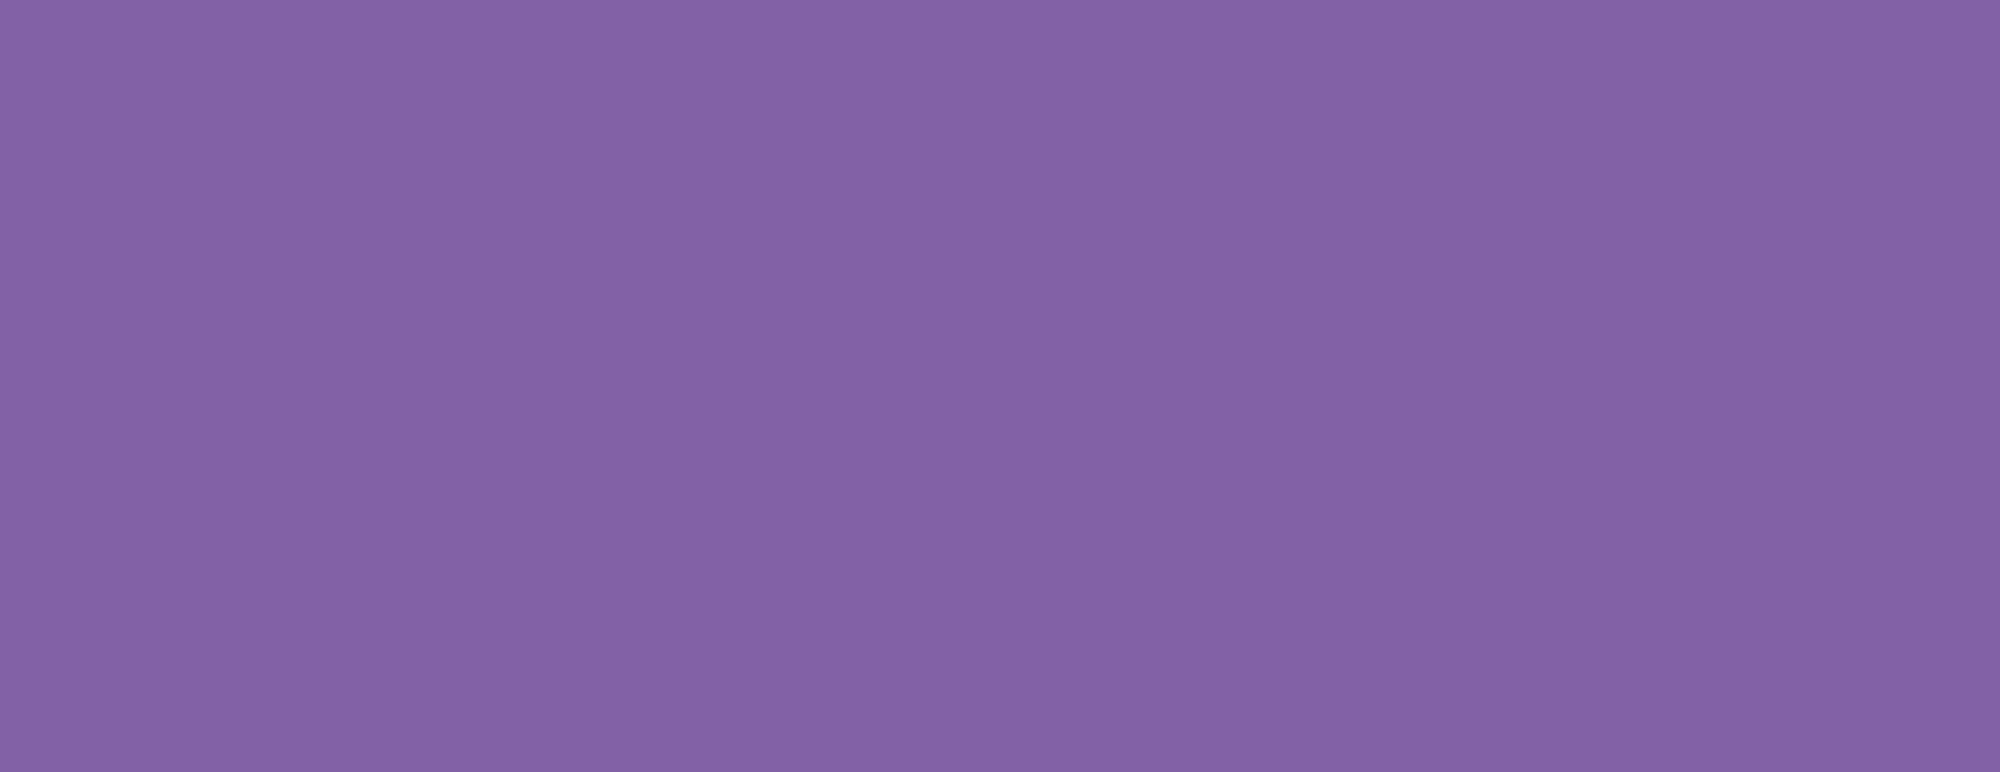 Fancy, Lavendel & Fenstersticker Marabu, 80 Fun ml